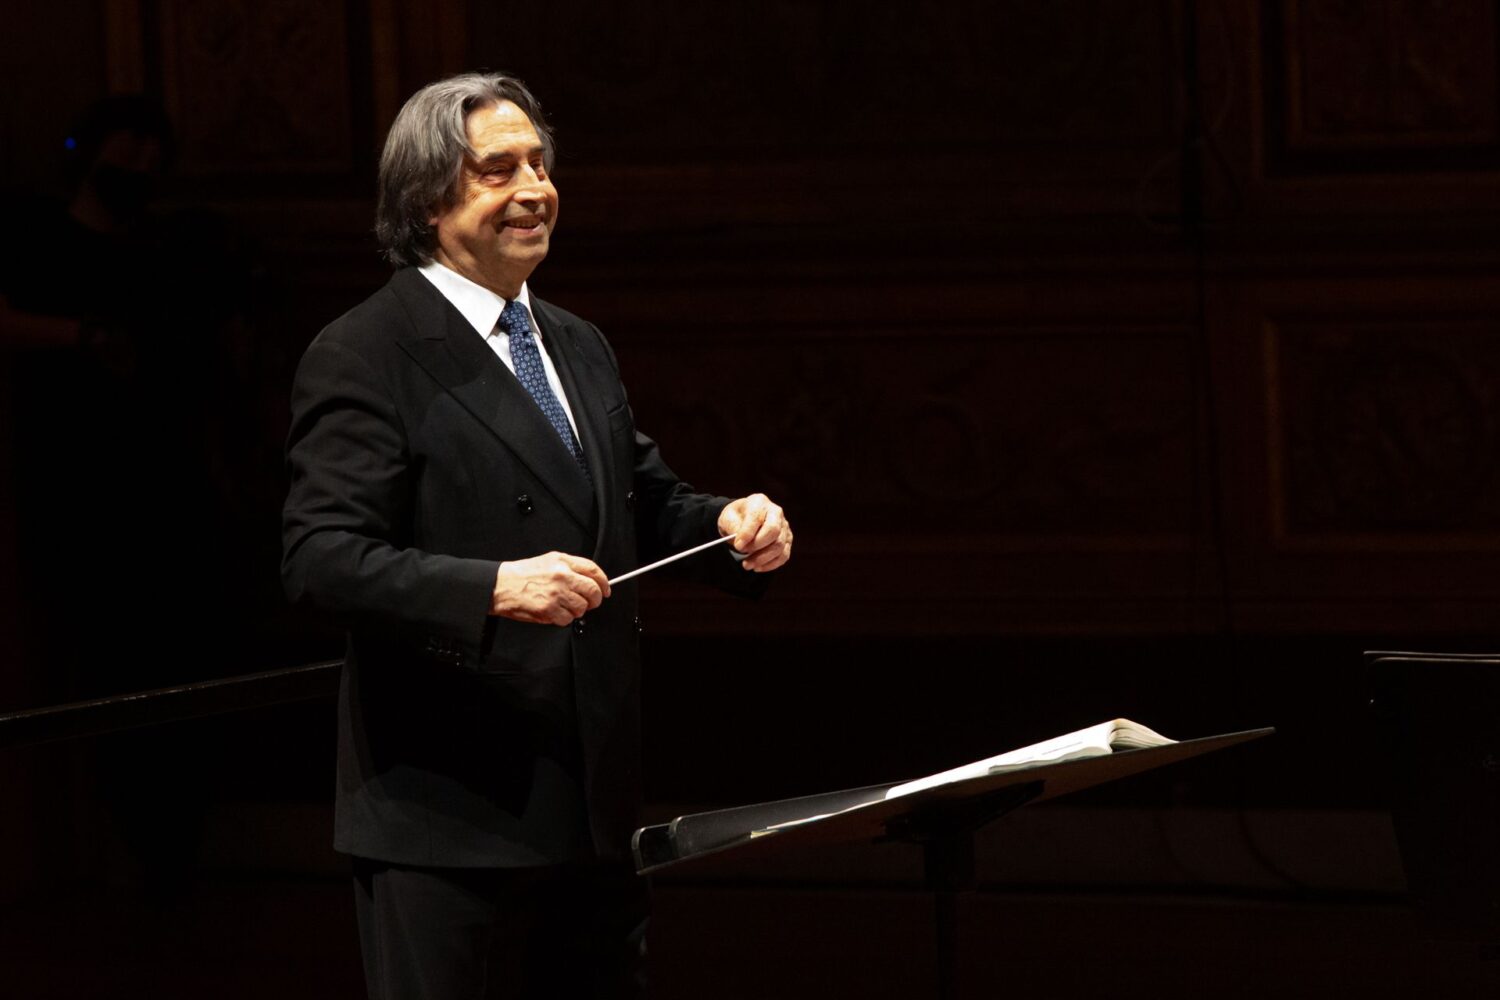 A Palermo l’Orchestra Giovanile Cherubini diretta da Riccardo Muti